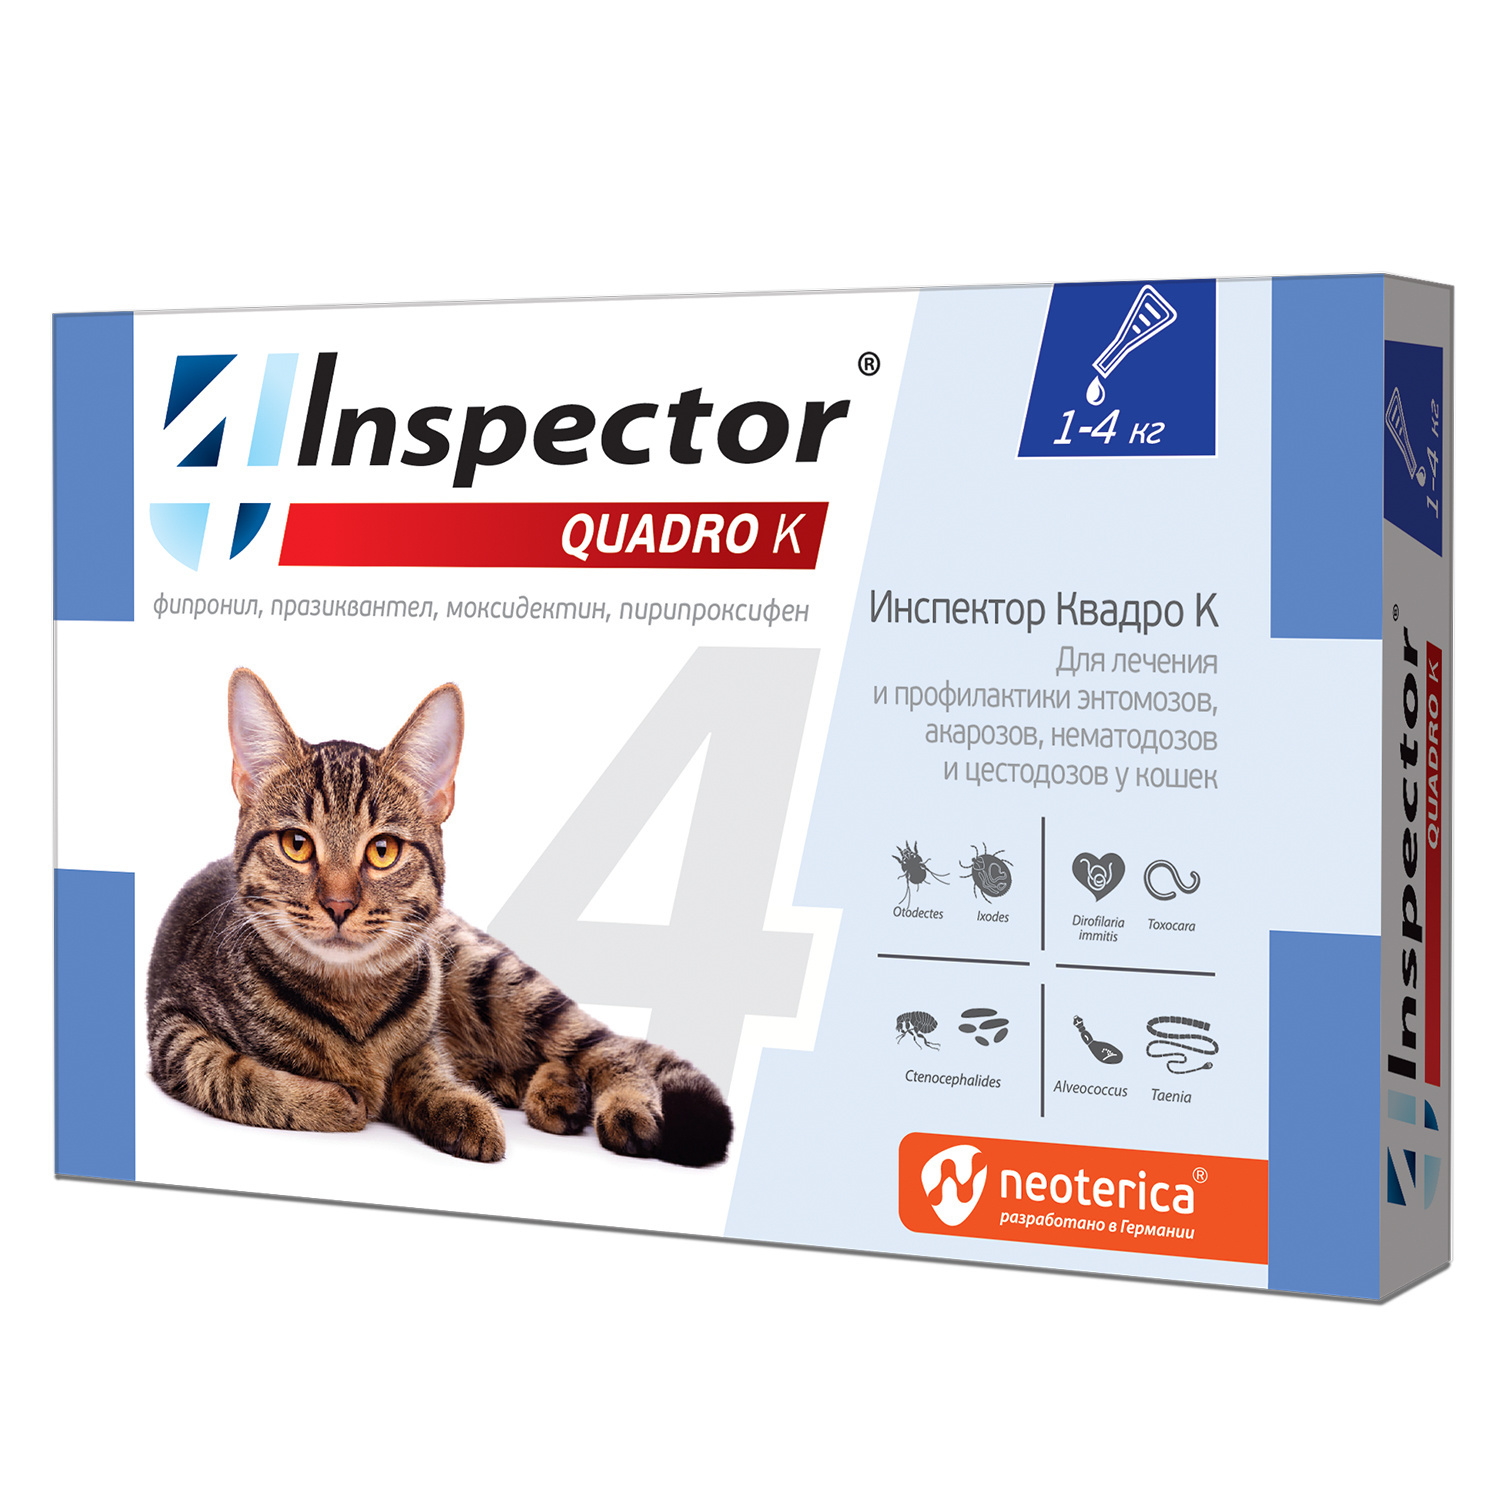 Inspector Inspector quadro капли на холку для кошек 1-4 кг, от глистов, насекомых, клещей (180 г) inspector inspector таблетки quadro для кошек и собак 8 16 кг от глистов насекомых клещей 15 г